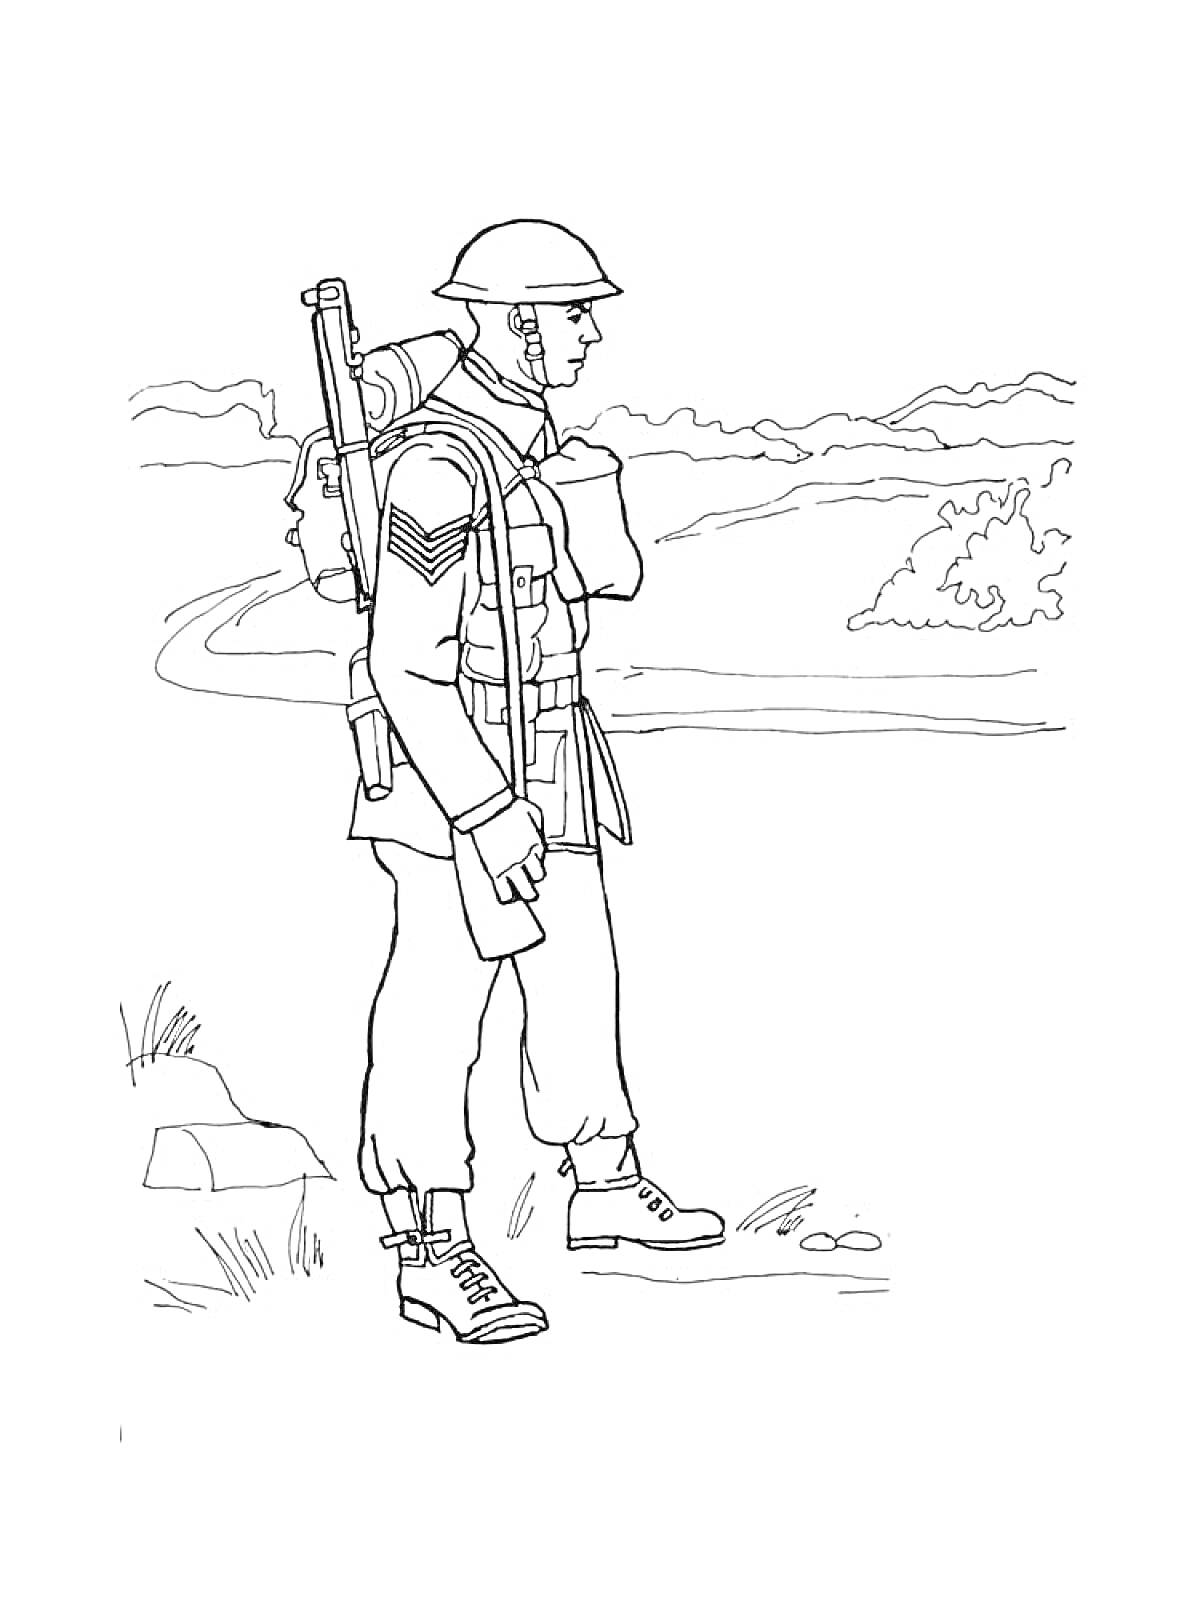 Раскраска Солдат на марше с рюкзаком и винтовкой на фоне пейзажа с дорогой и кустами